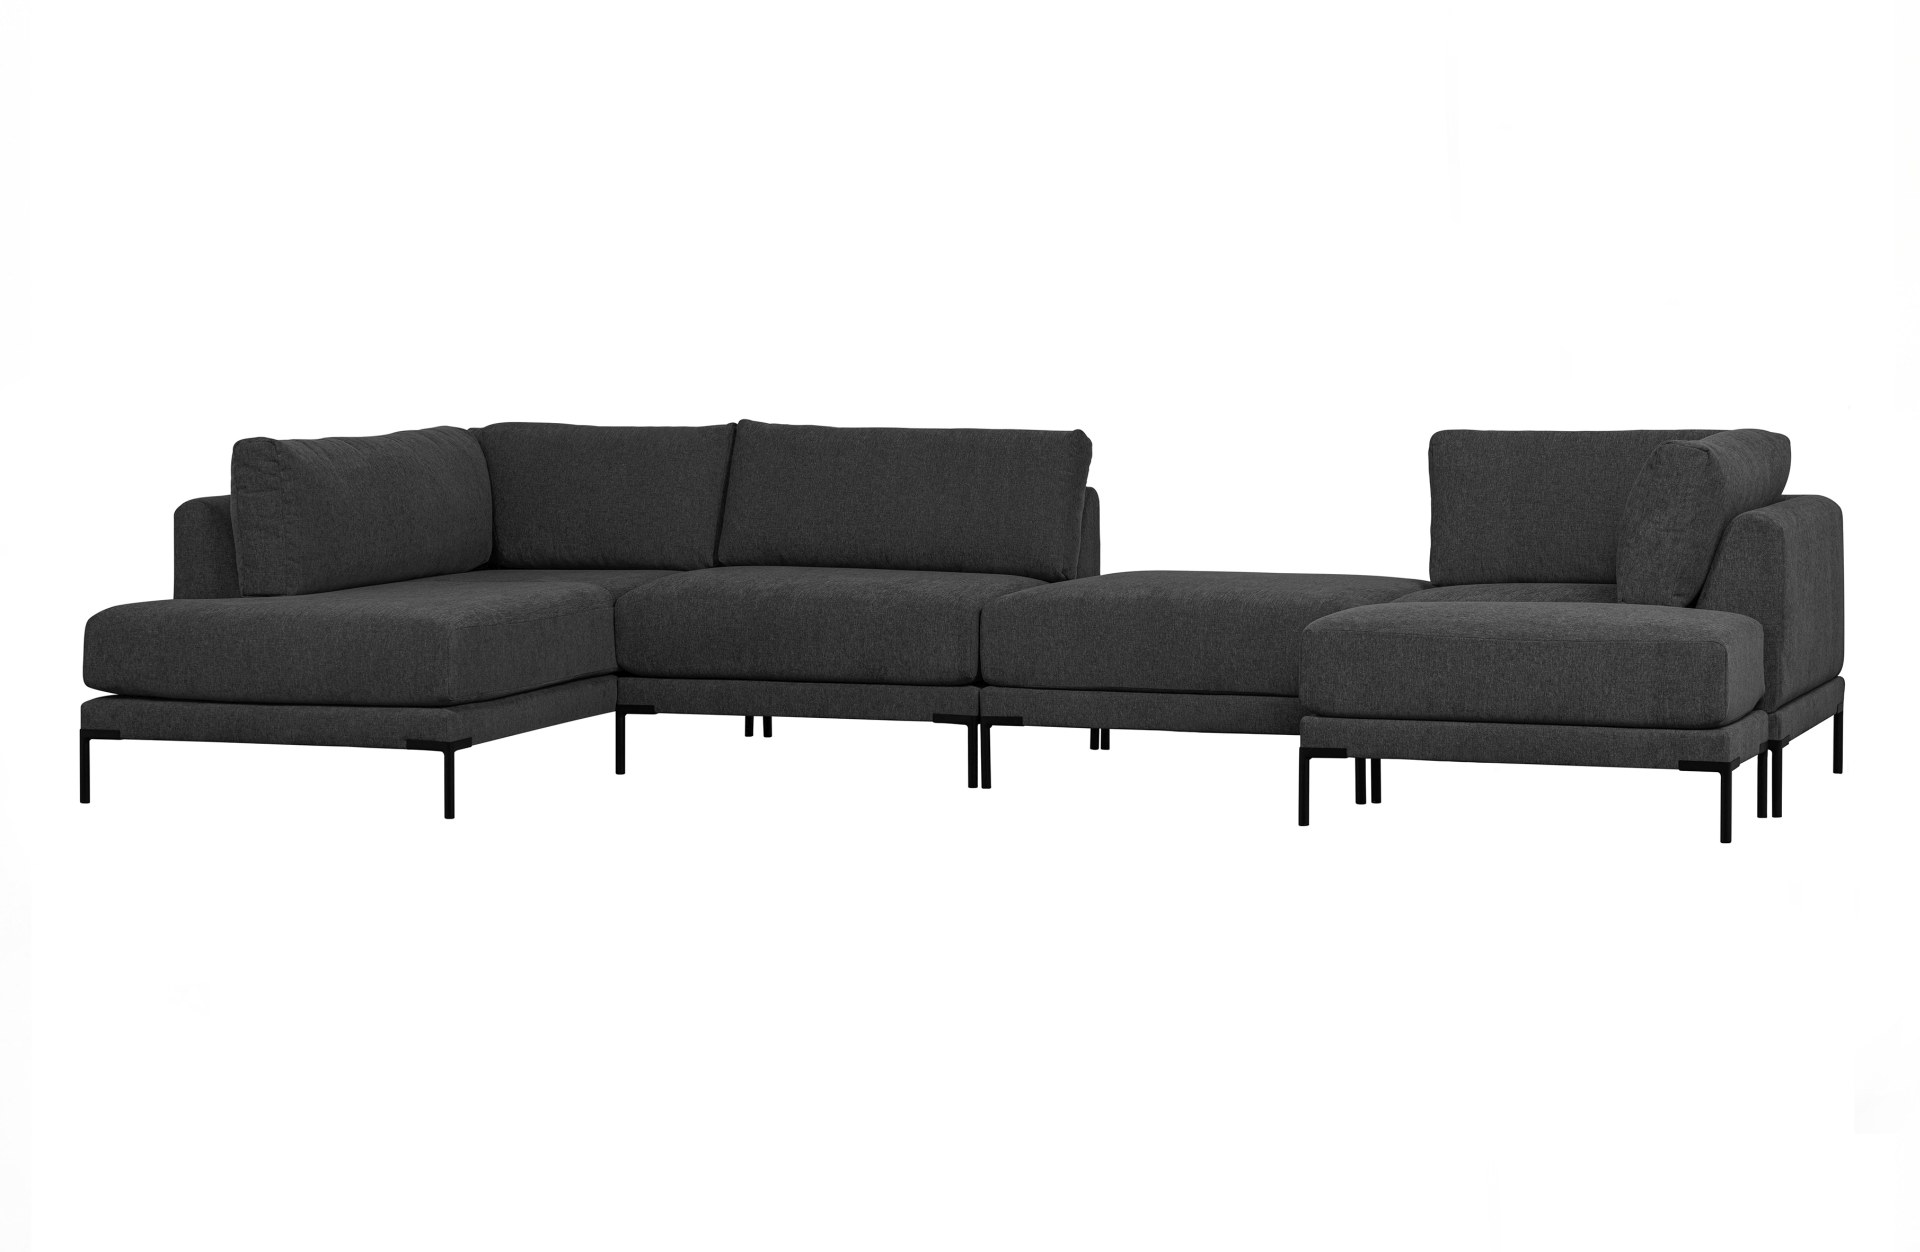 Das Modulsofa Couple Lounge überzeugt mit seinem modernen Design. Das Eck-Element wurde aus Melange Stoff gefertigt, welcher einen einen dunkelgrauen Farbton besitzen. Das Gestell ist aus Metall und hat eine schwarze Farbe. Das Element hat eine Länge von 